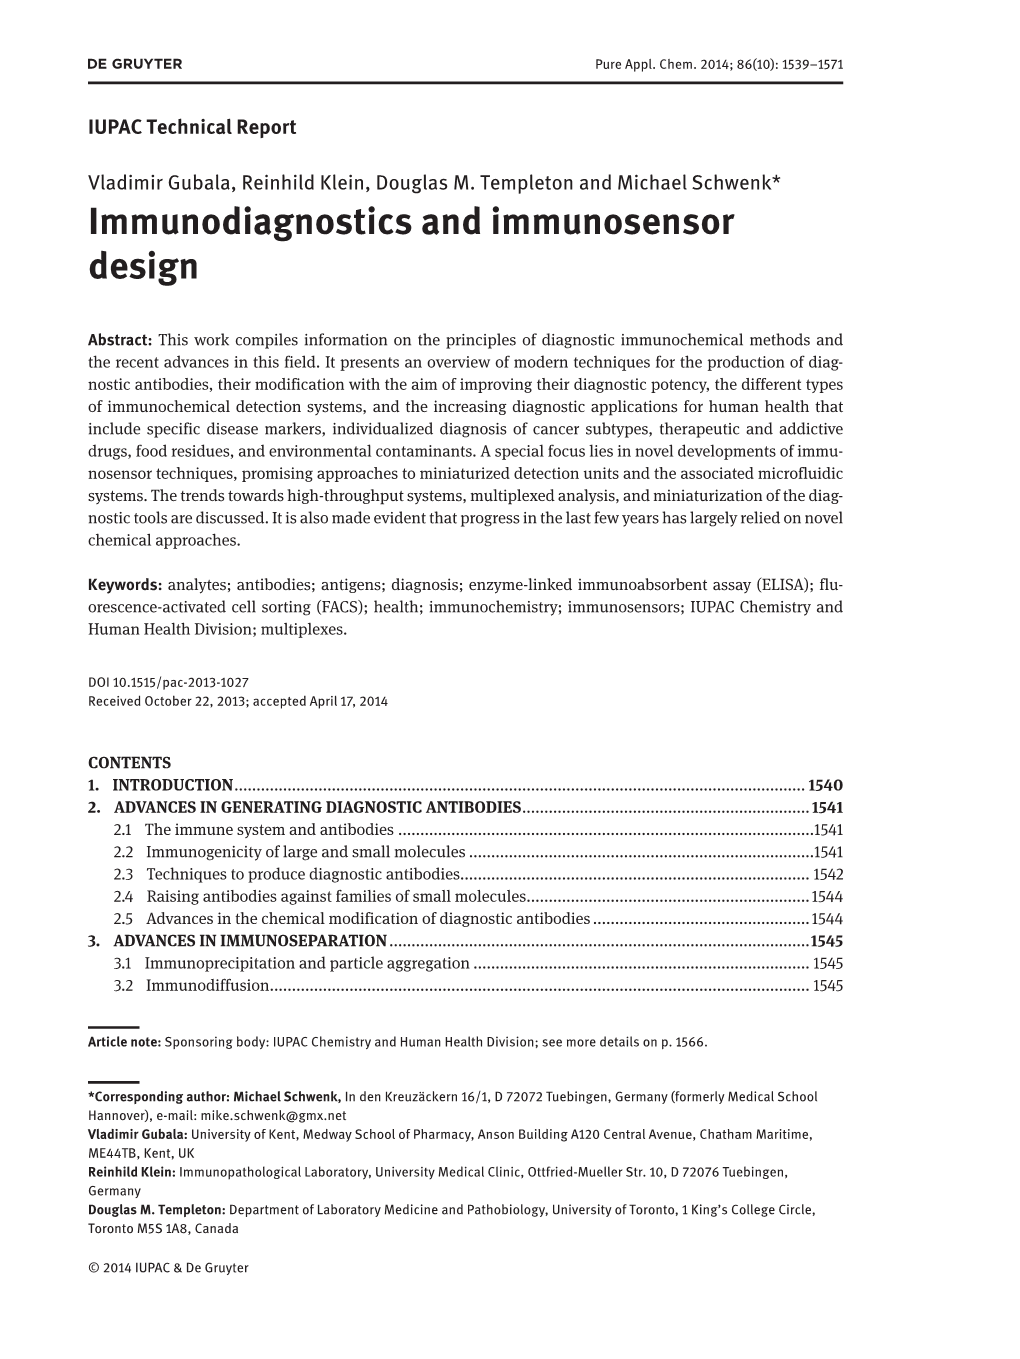 Immunodiagnostics and Immunosensor Design